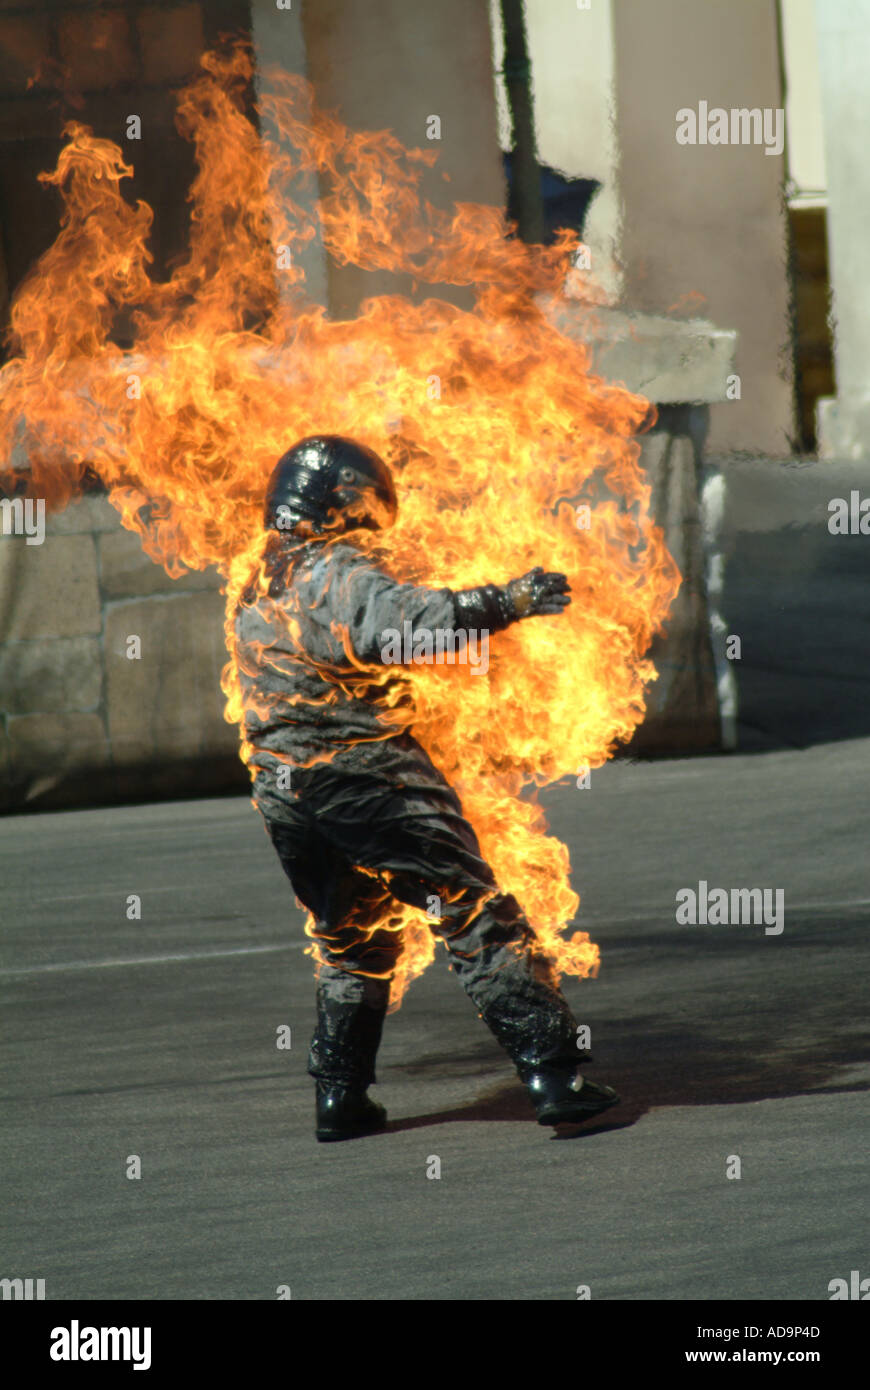 Man on Fire stunt show Foto Stock